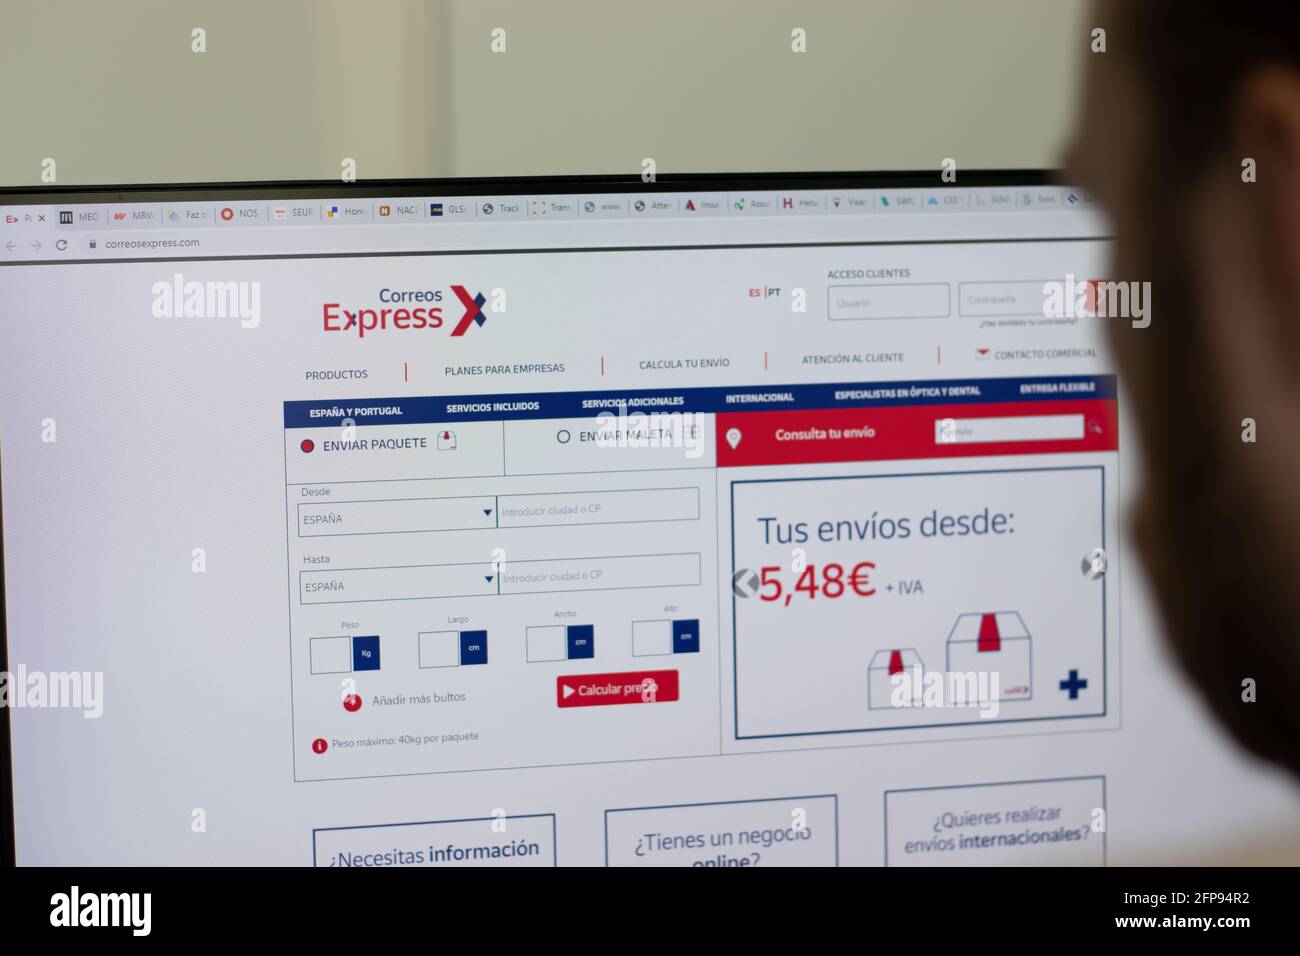 New York, USA - 1. Mai 2021: Correos Express Unternehmenswebsite auf dem Bildschirm, illustrative redaktionelle Darstellung Stockfoto